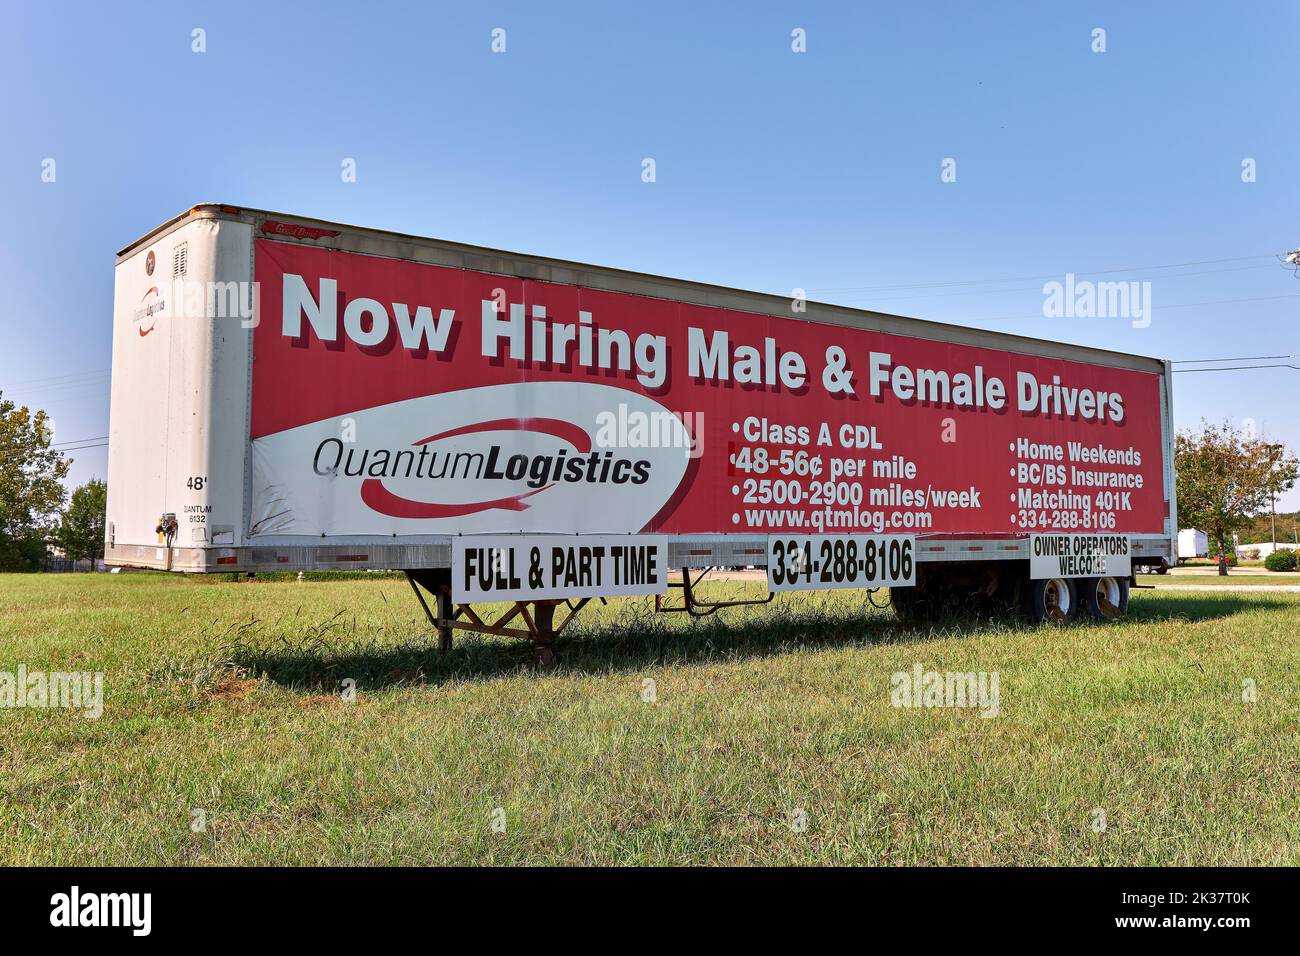 Große, jetzt anstellende Lkw-Fahrer unterschreiben Werbung für männliche und weibliche Lkw-Fahrer in Montgomery, Alabama, USA. Stockfoto